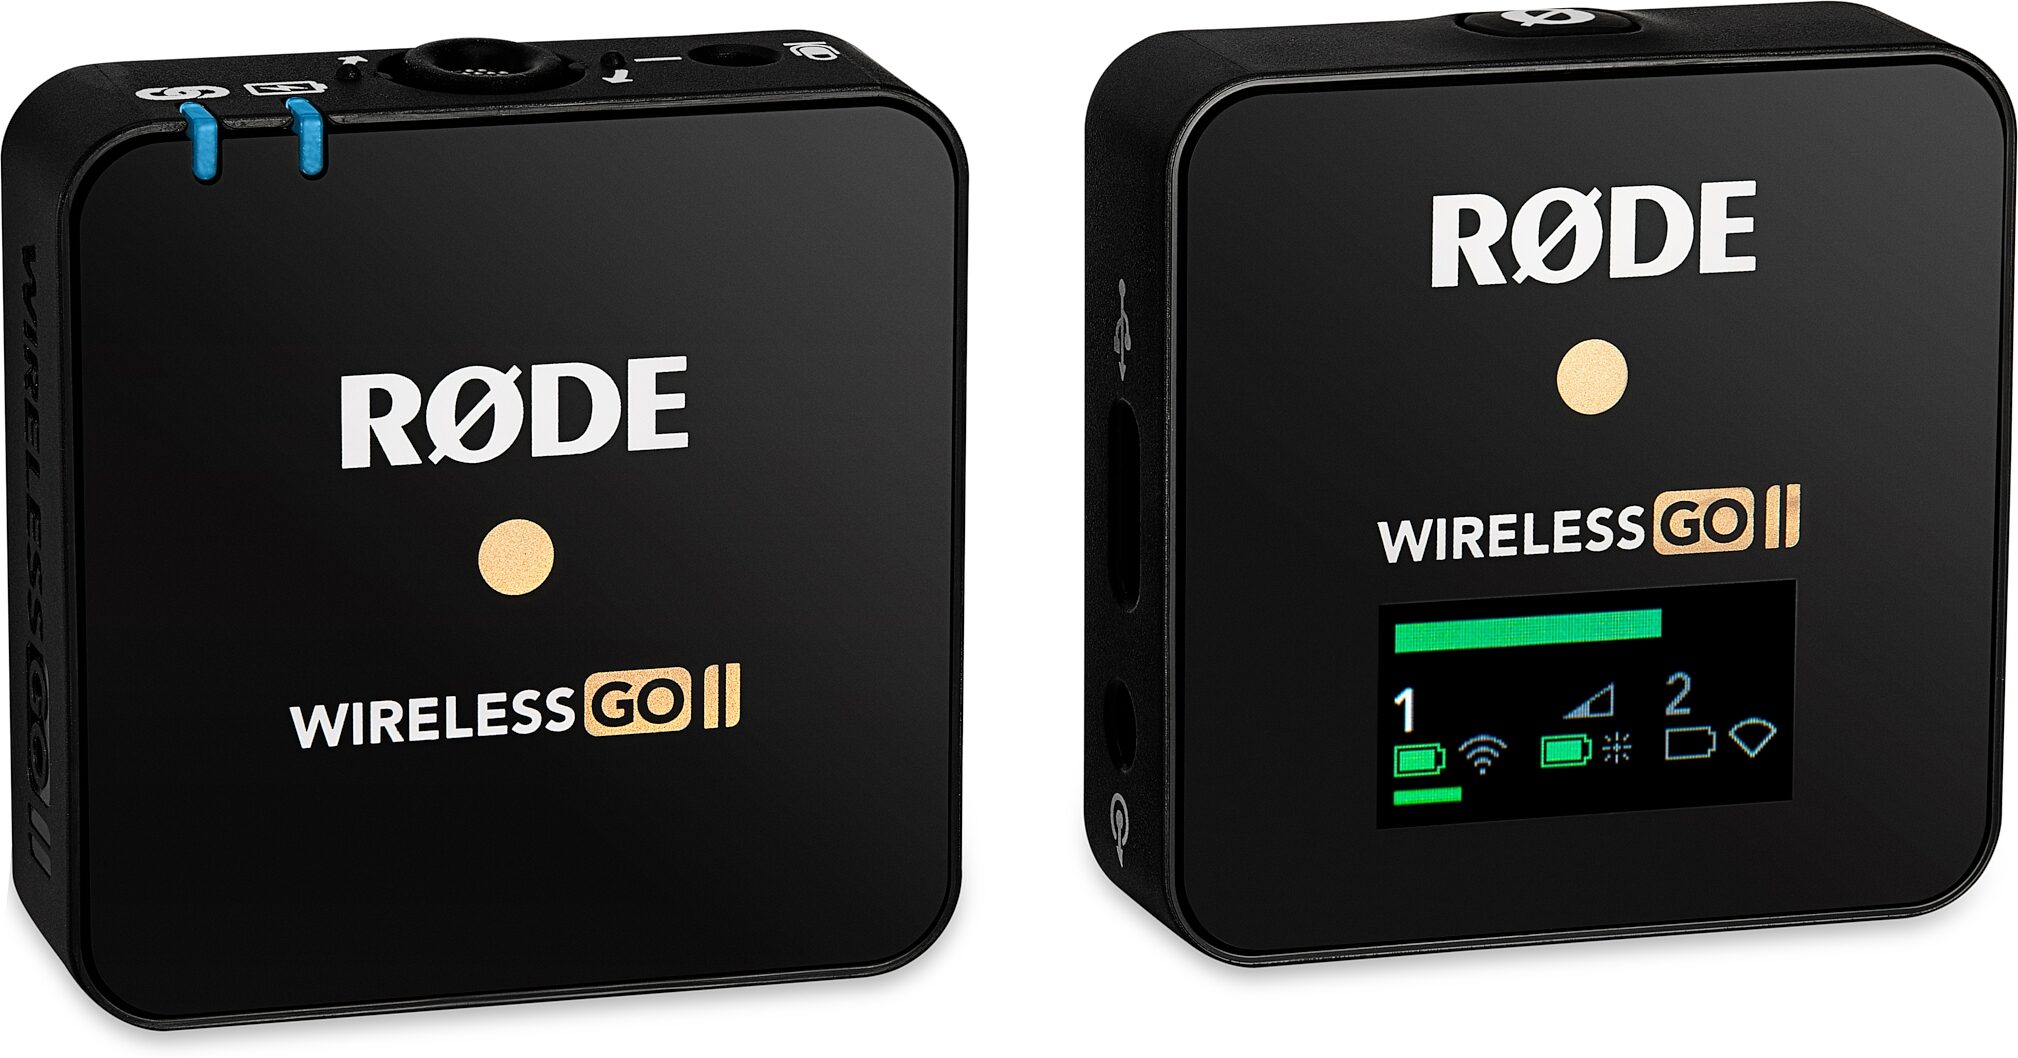 RODE wireless go WIGO ii